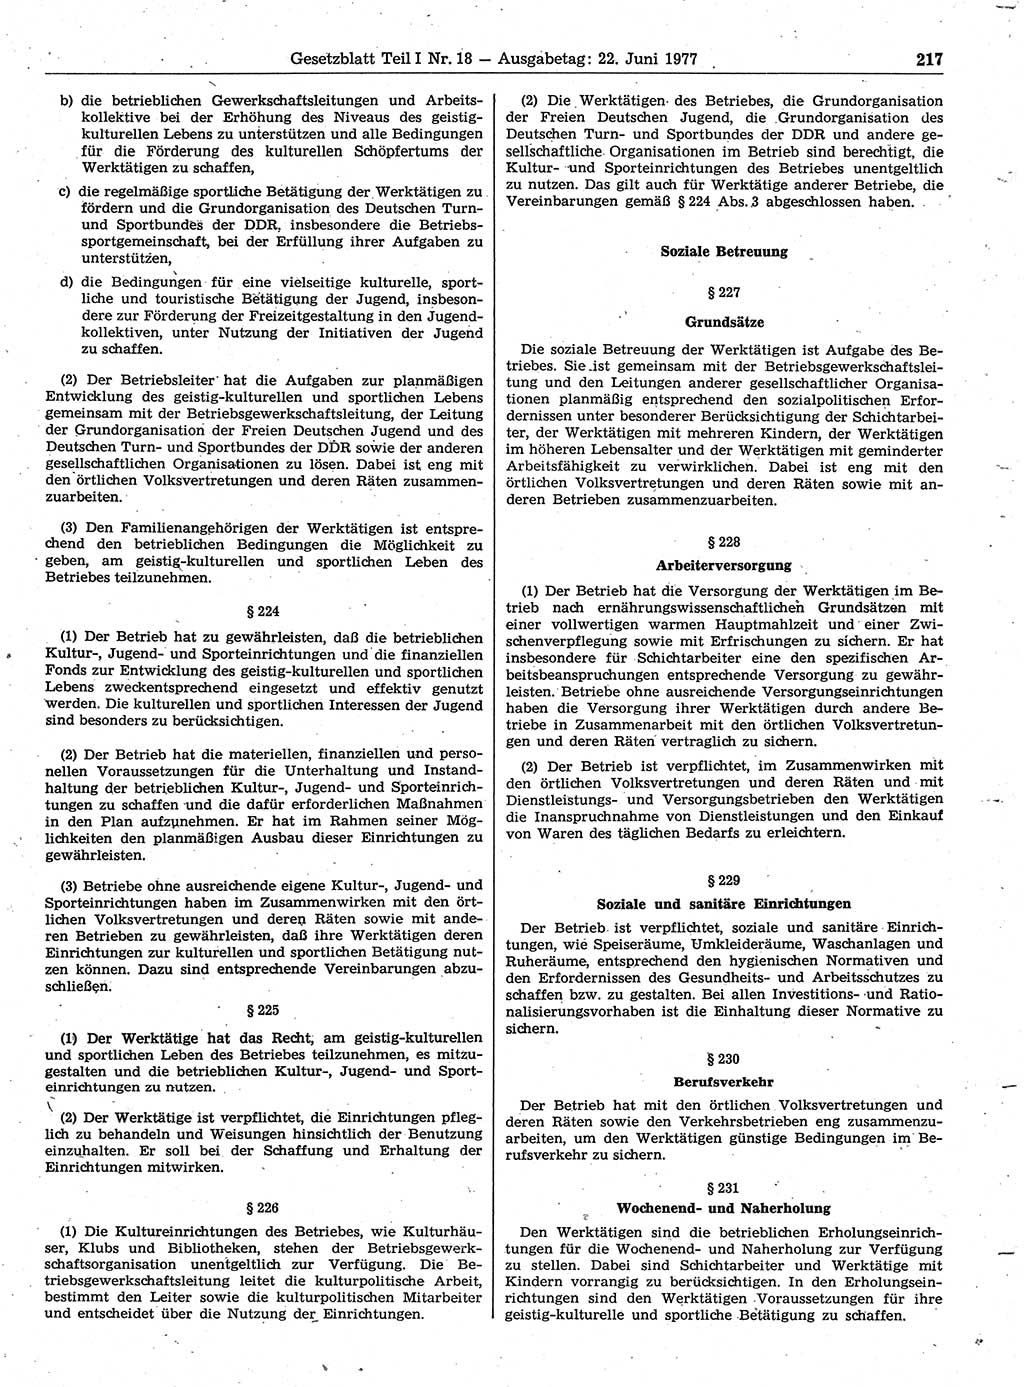 Gesetzblatt (GBl.) der Deutschen Demokratischen Republik (DDR) Teil Ⅰ 1977, Seite 217 (GBl. DDR Ⅰ 1977, S. 217)